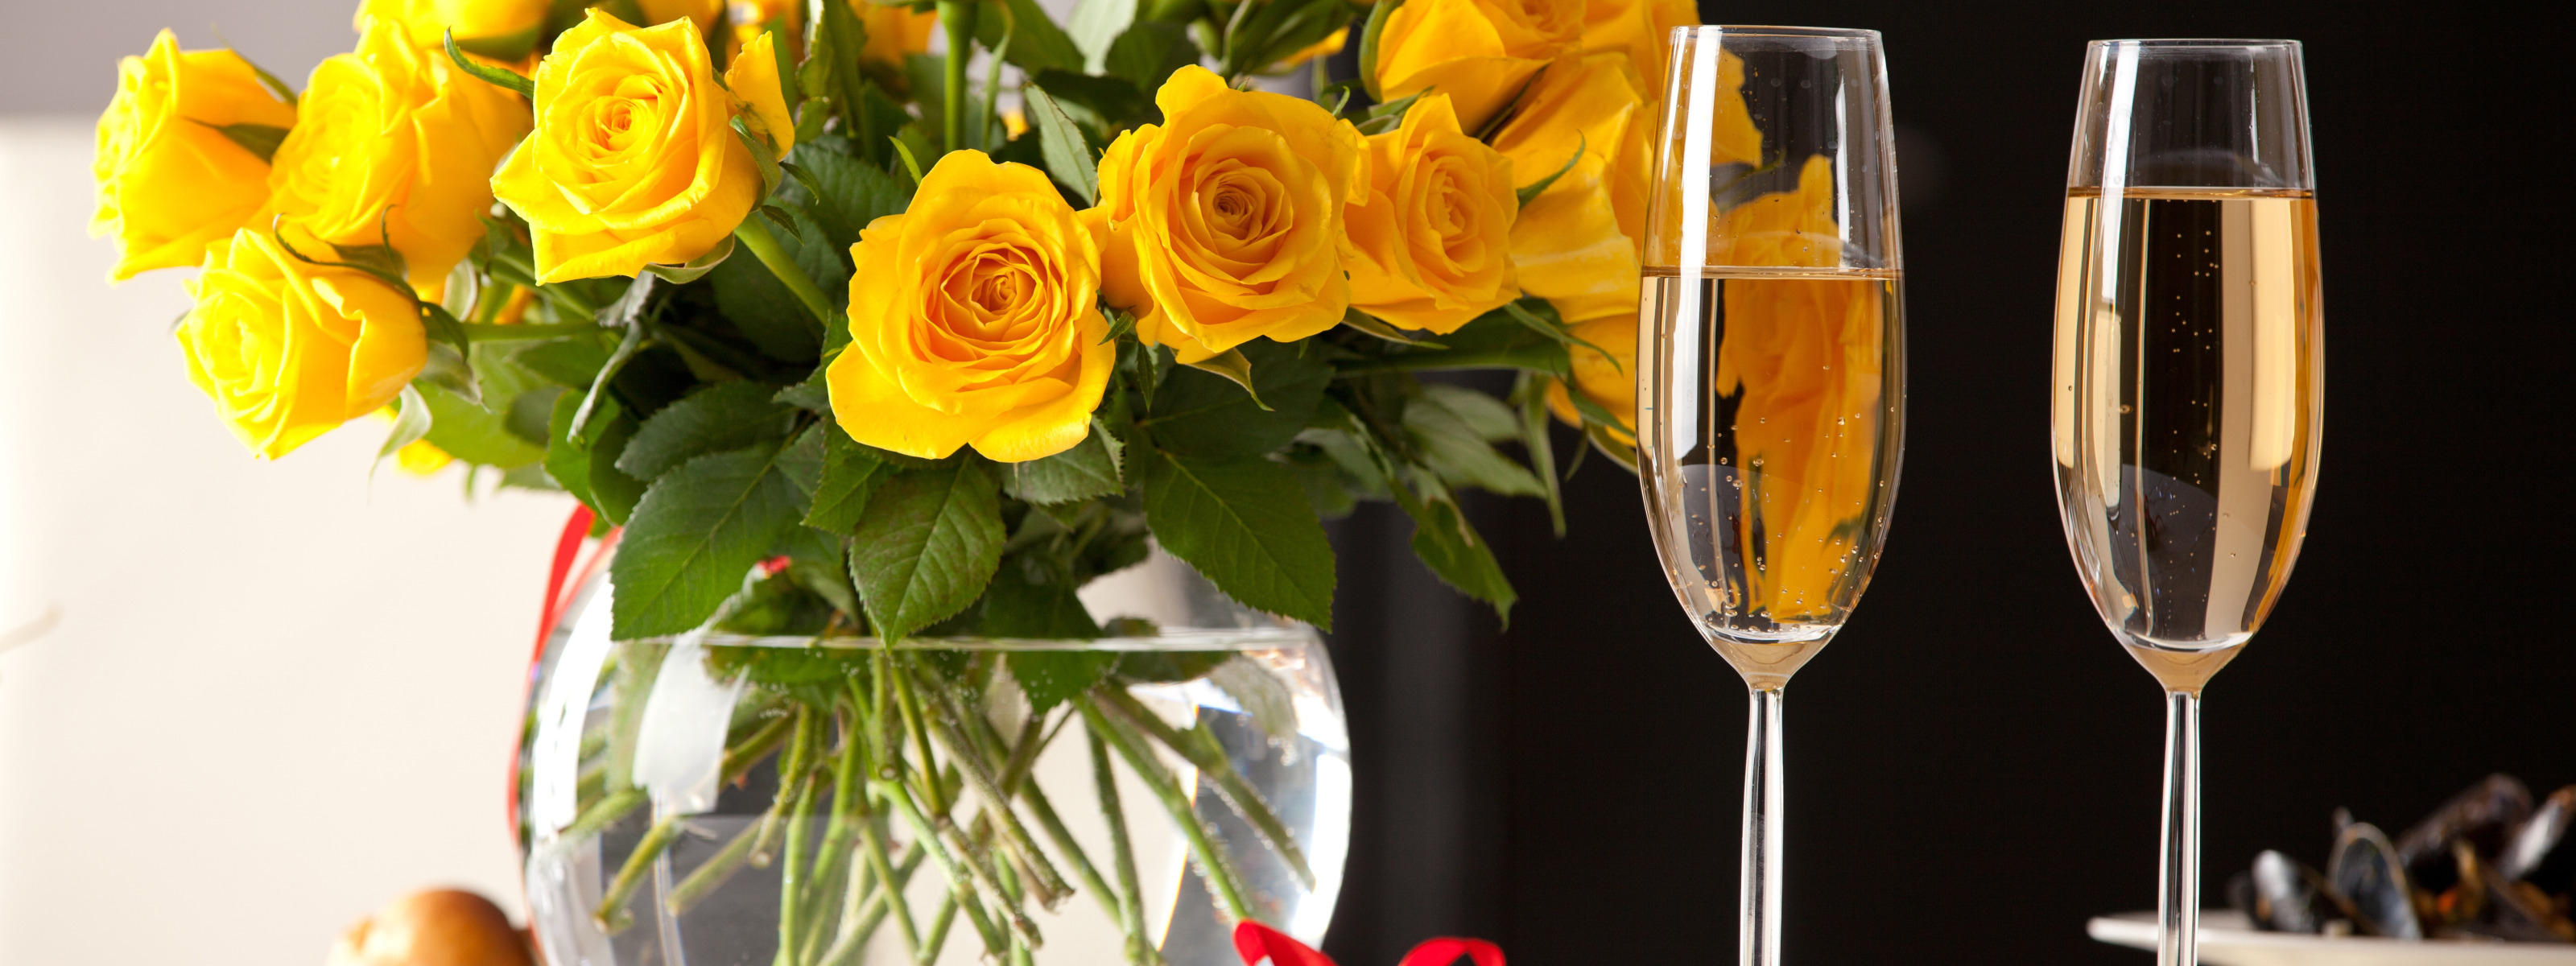 Шампанское и розы 88 глава. Цветы в бокале. Бокалы с шампанским. Цветы и шампанское. Красивые цветы в бокале.